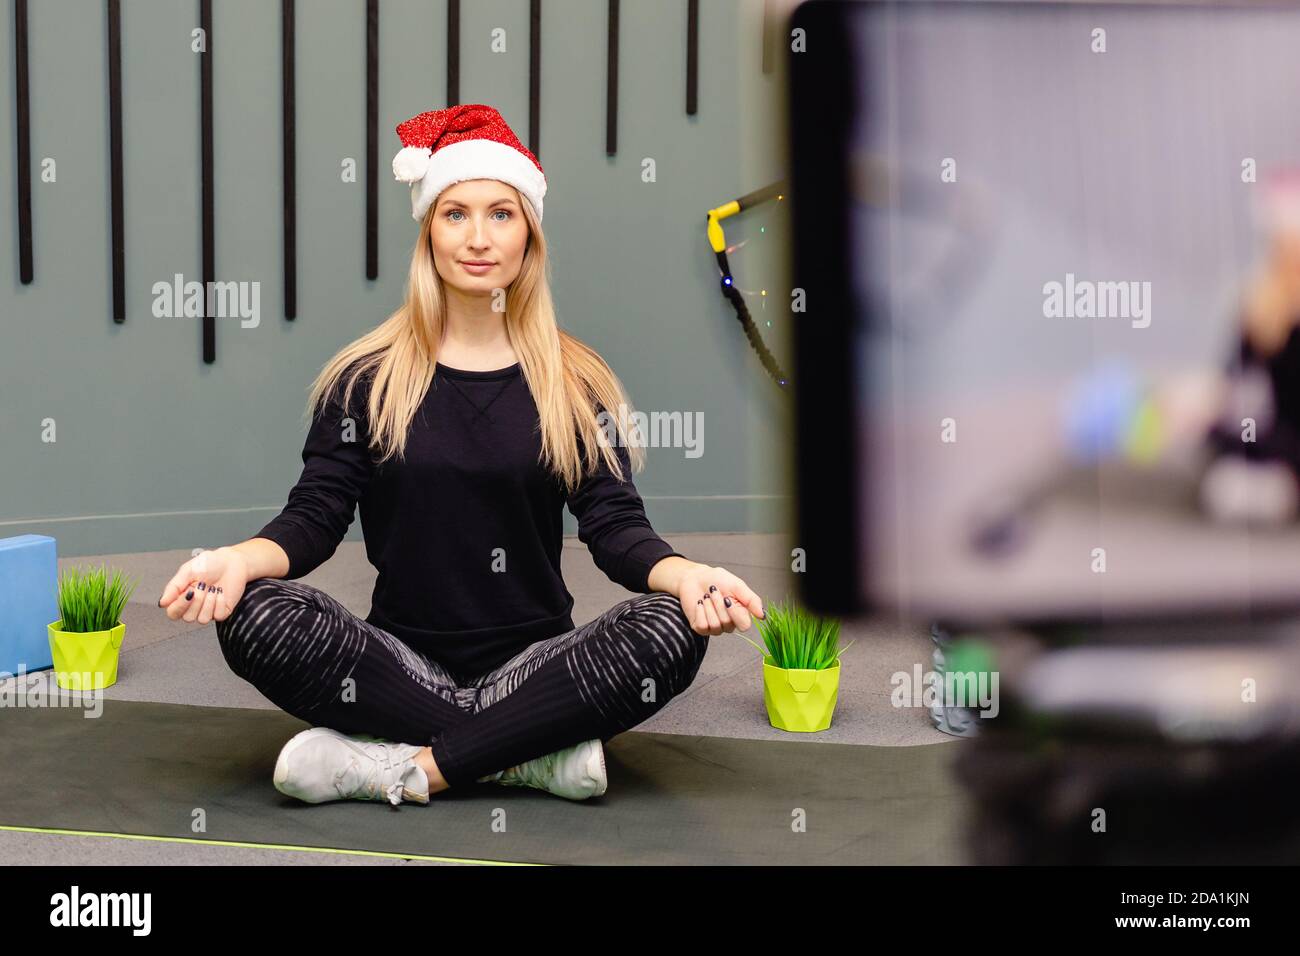 Ein Mädchen in einem Weihnachtsmütze, ein Sportoutfit zeichnet Trainingsvideos auf KameraNotieren Sie eine Videostunde über Trainingssport für den Kanal im Internet. Blog Stockfoto